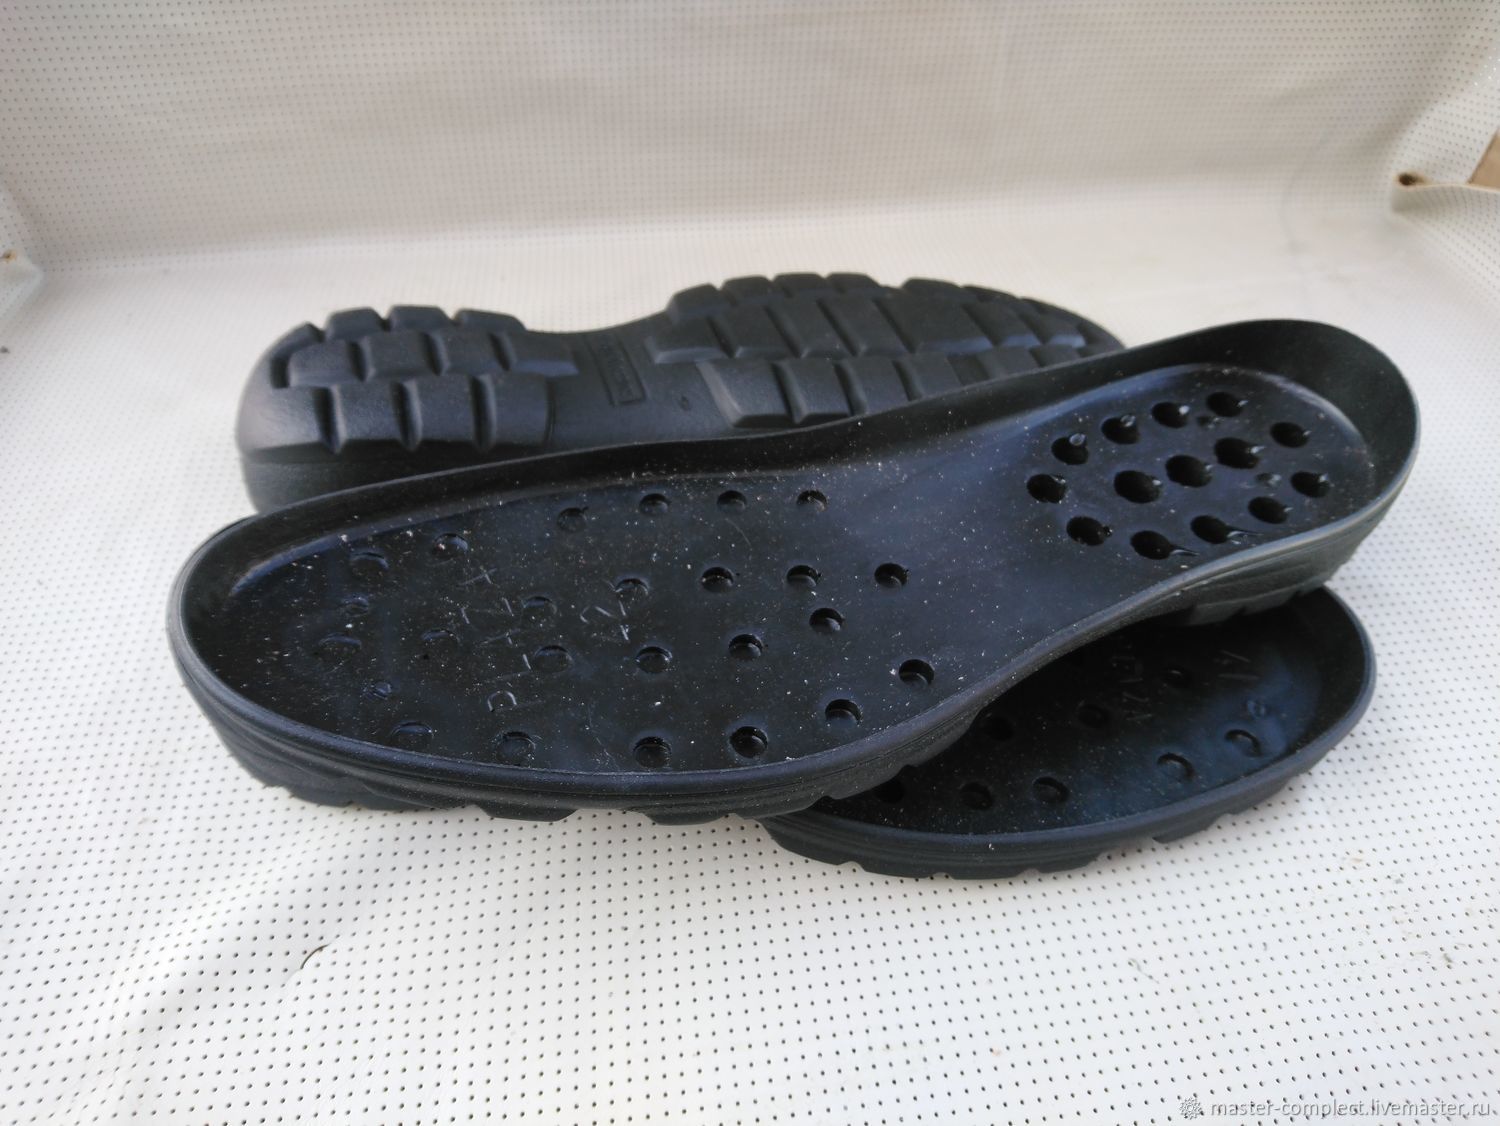 Полиуретановая подошва для обуви что это такое